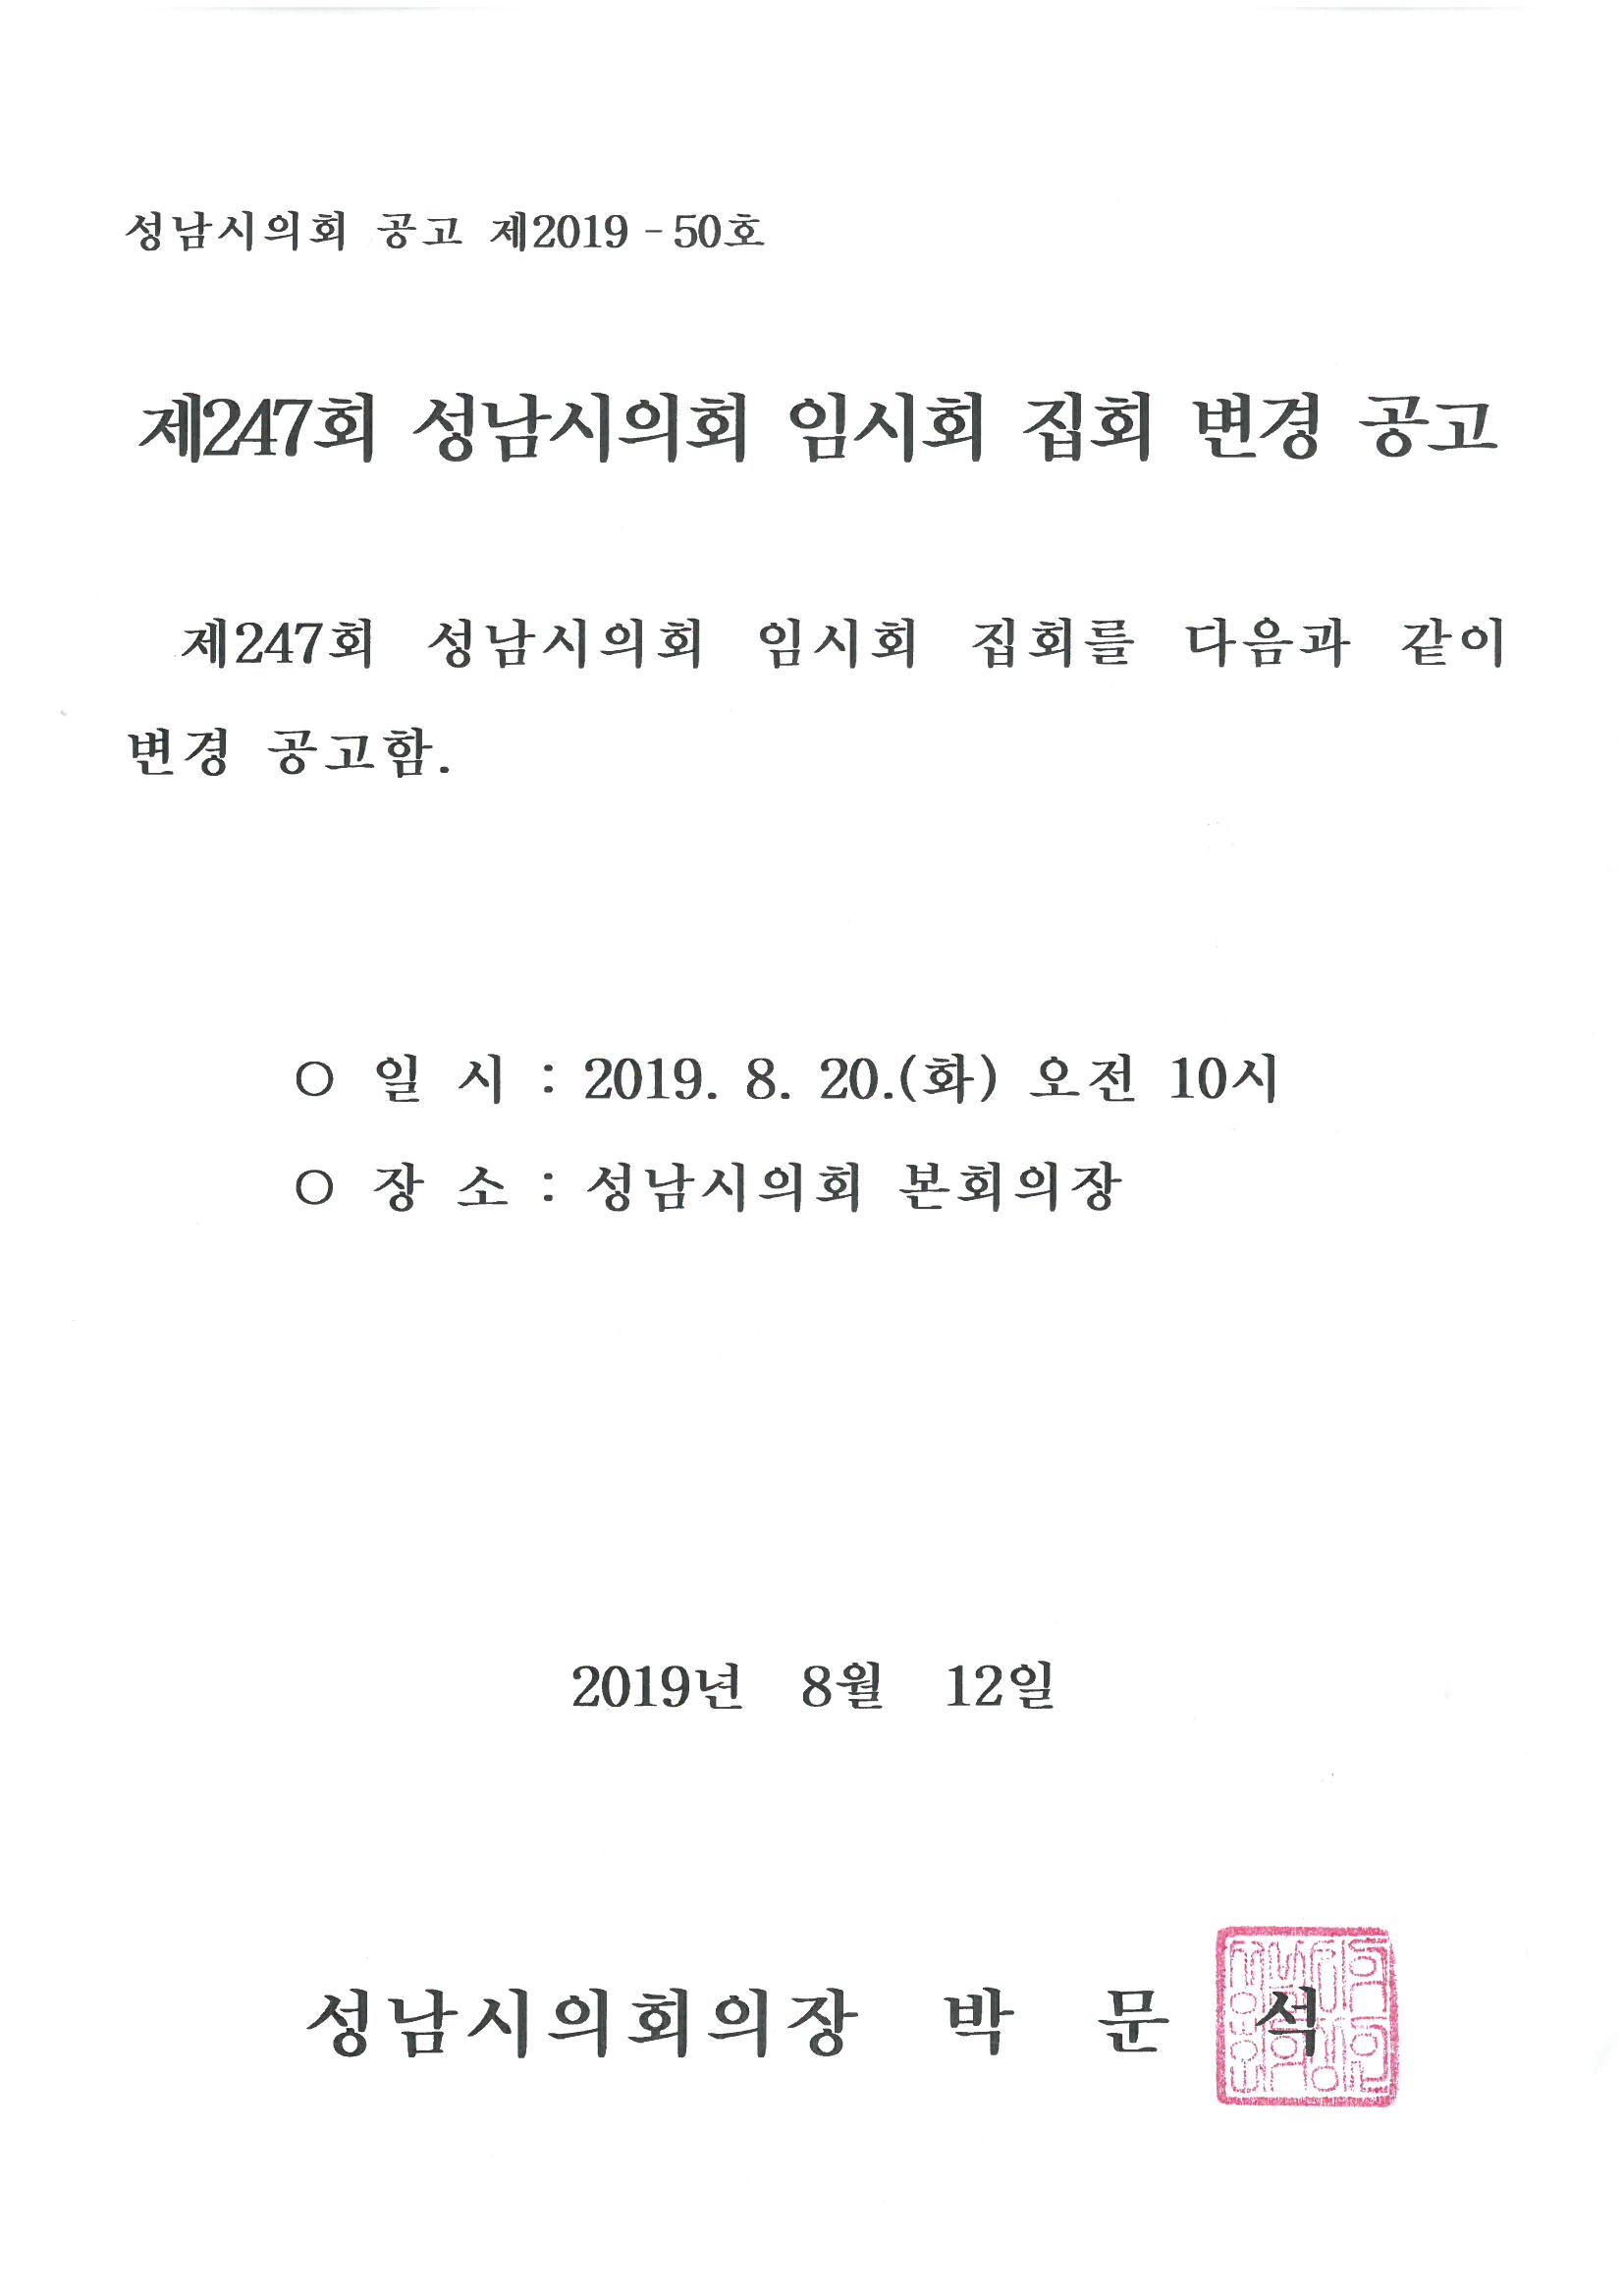 제247회 성남시의회 임시회 집회 변경 공고 - 1